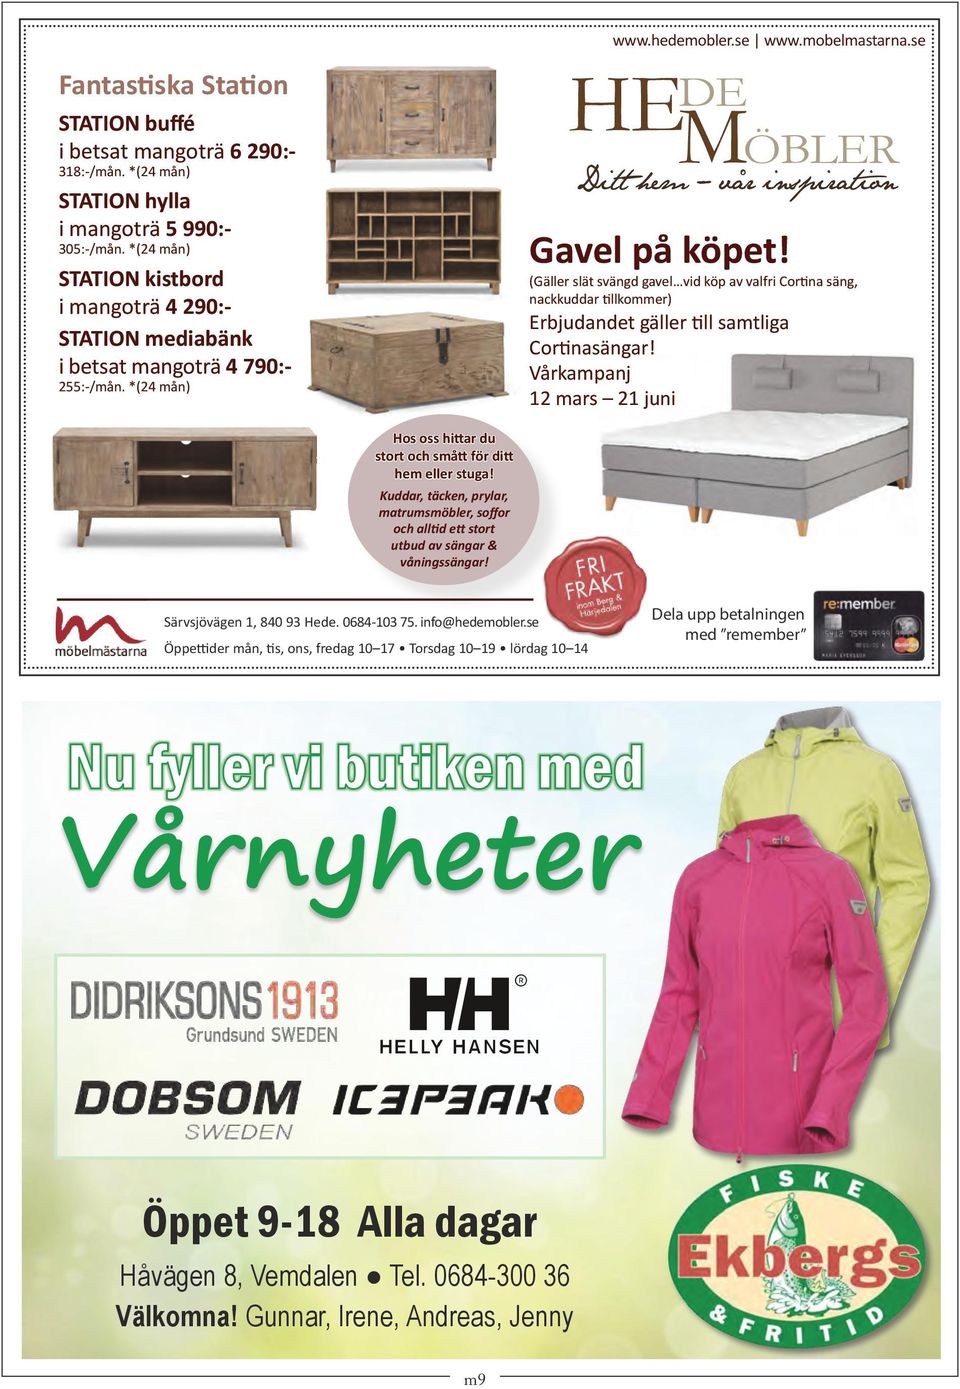 (Gäller slät svängd gavel vid köp av valfri Cortina säng, nackkuddar tillkommer) Erbjudandet gäller till samtliga Cortinasängar!